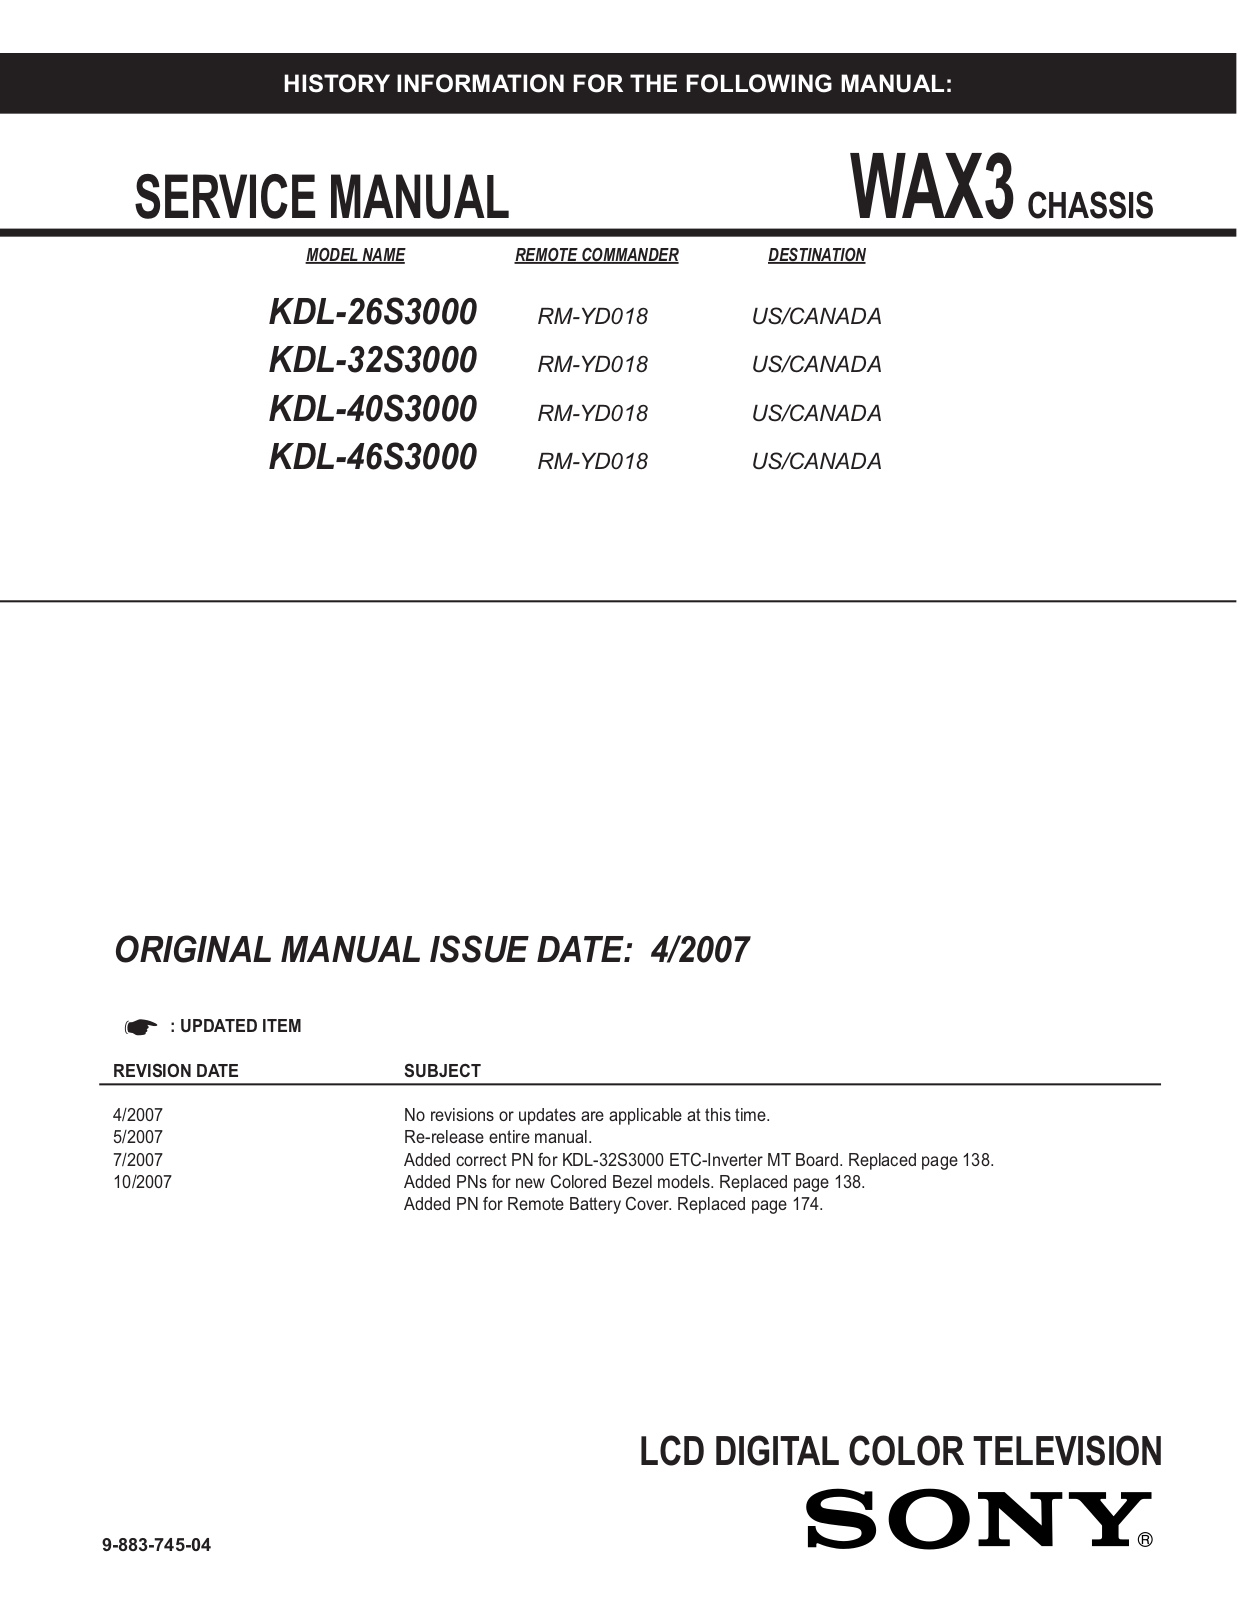 Sony KDL-26S300, KDL-32S300, KDL-40S300, KDL-46S300 Service Manual